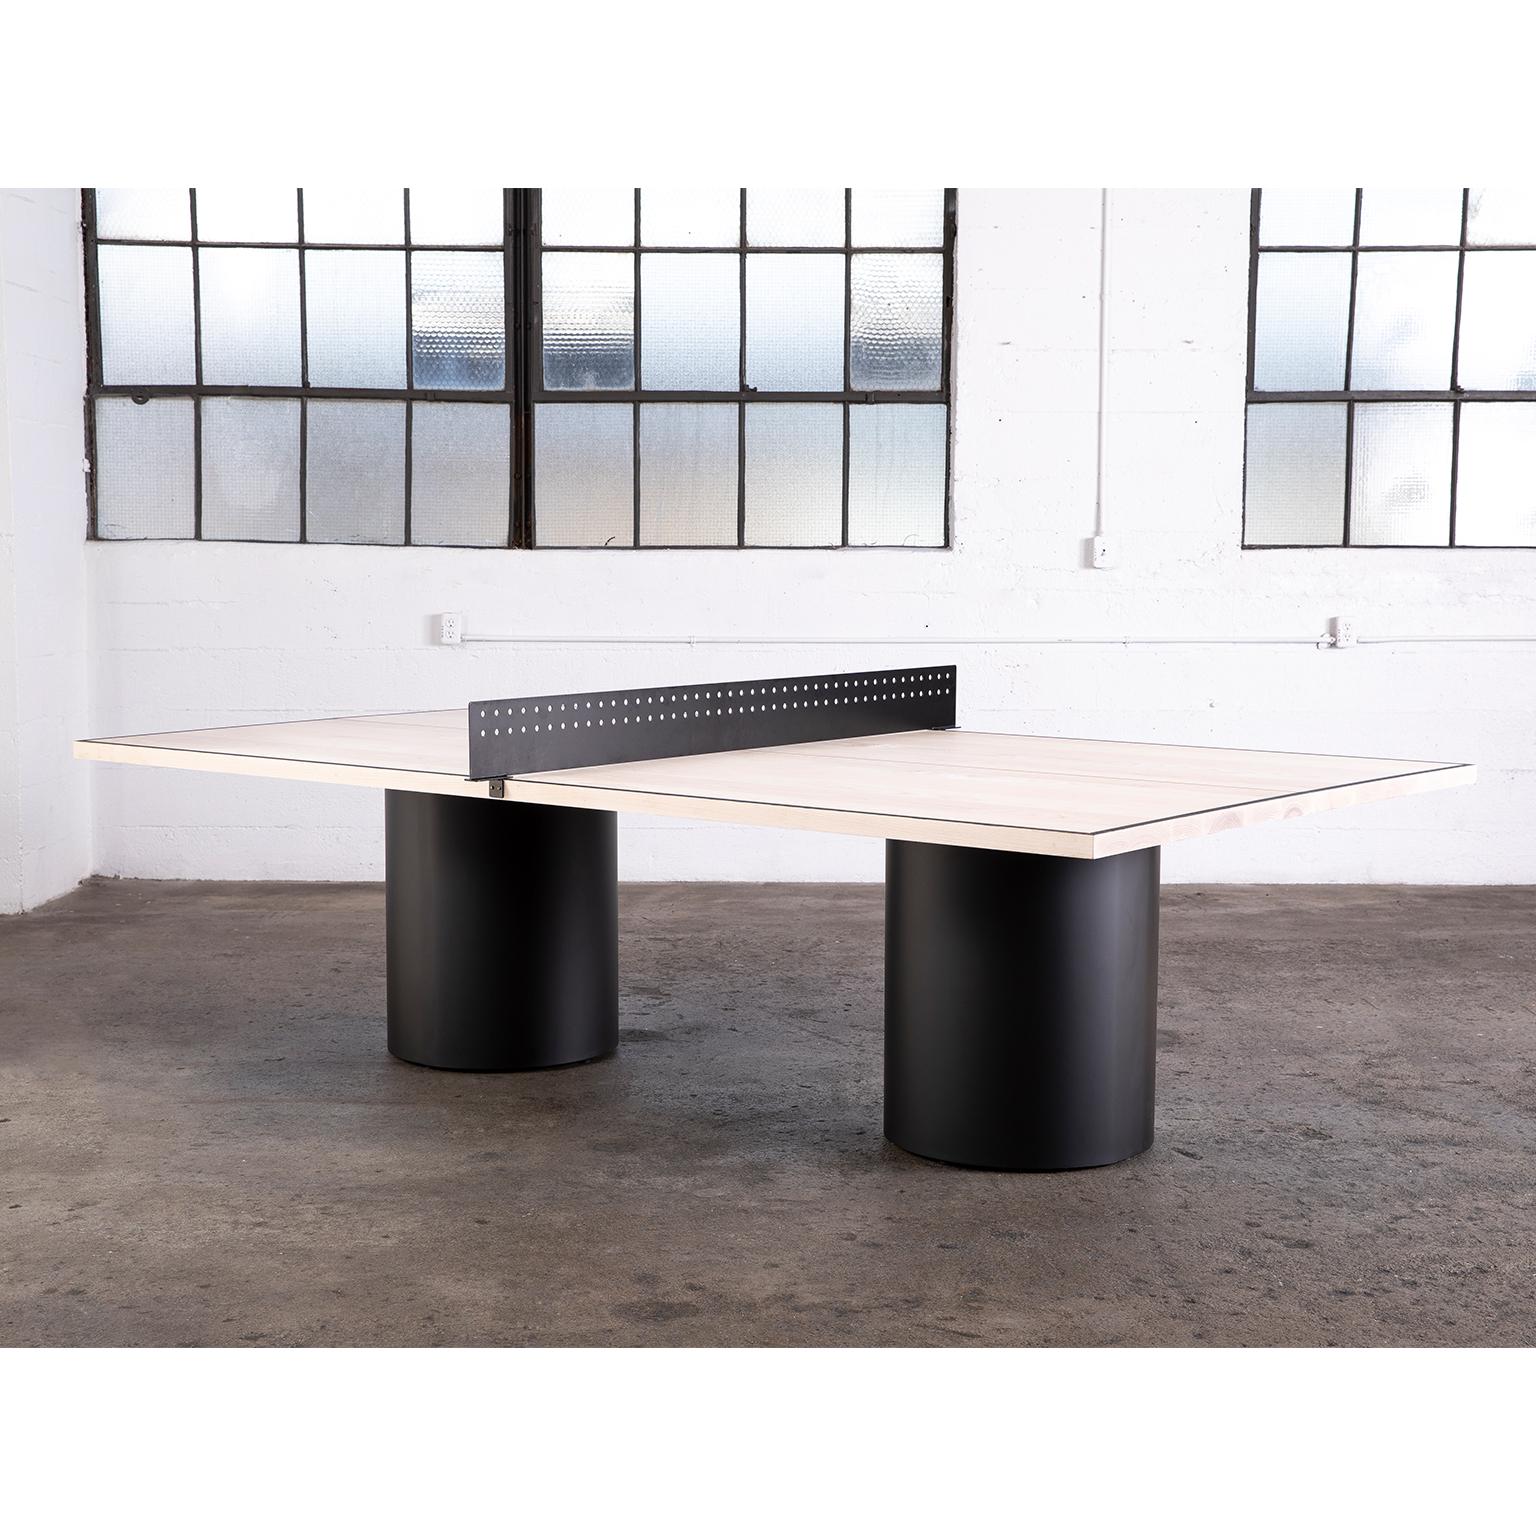 Der Column Ping Pong Table ist unsere moderne Version eines klassischen Spiels. Die matte Holzplatte des Tisches wird von zwei Metallsäulen getragen, die in mattschwarz oder weiß pulverbeschichtet oder nach Ihren Wünschen lackiert werden können. Die